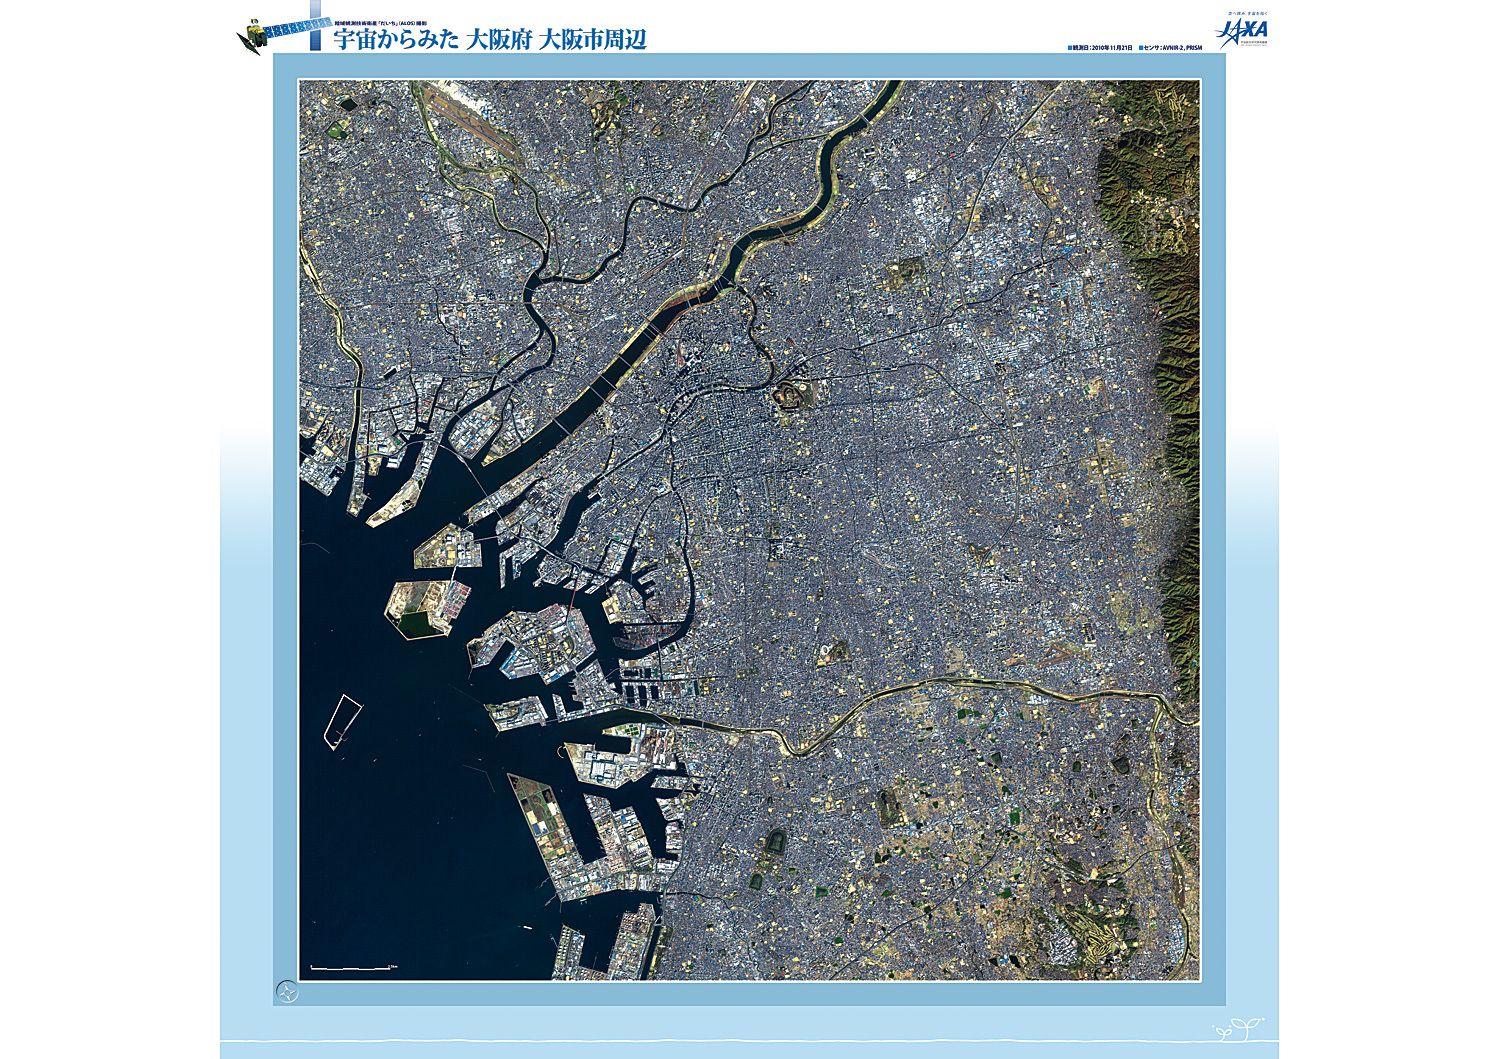 だいちから見た日本の都市 大阪府:衛星画像（ポスター仕上げ）